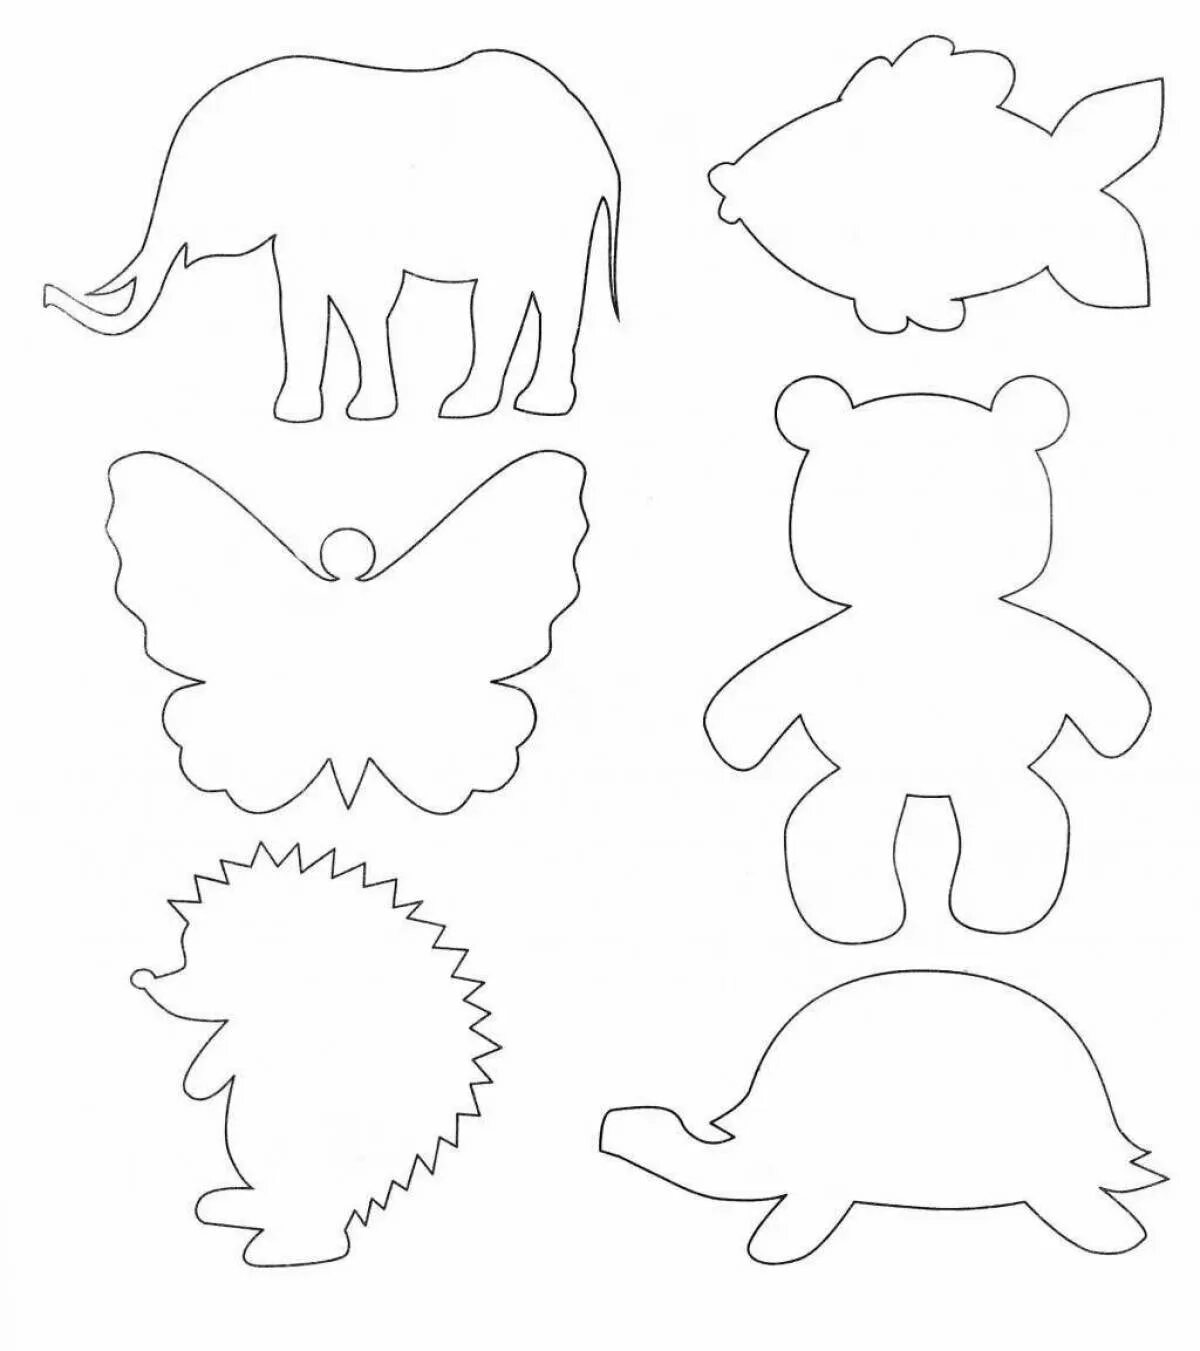 Вырезка изображений. Контуры животных для детей. Контуры животных для вырезания. Шаблоны животных для рисования. Шаблоны для вырезания для дошкольников.